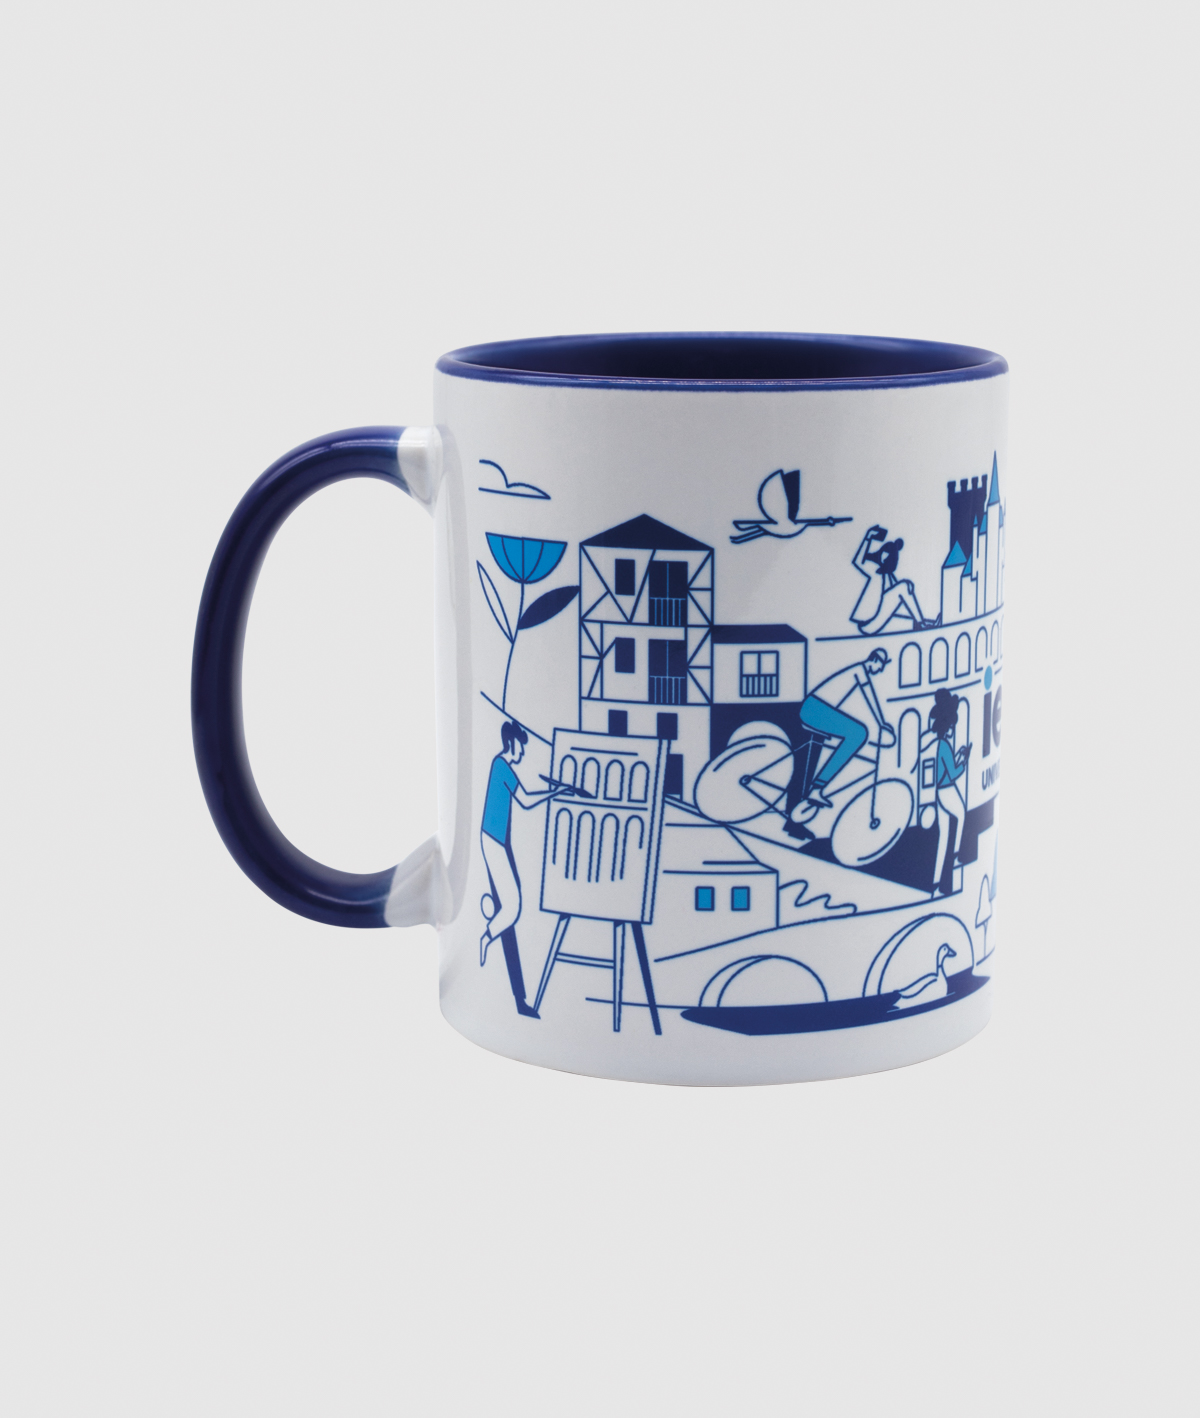 Segovia IEU Ceramic Mug - Limited Edition. white colour